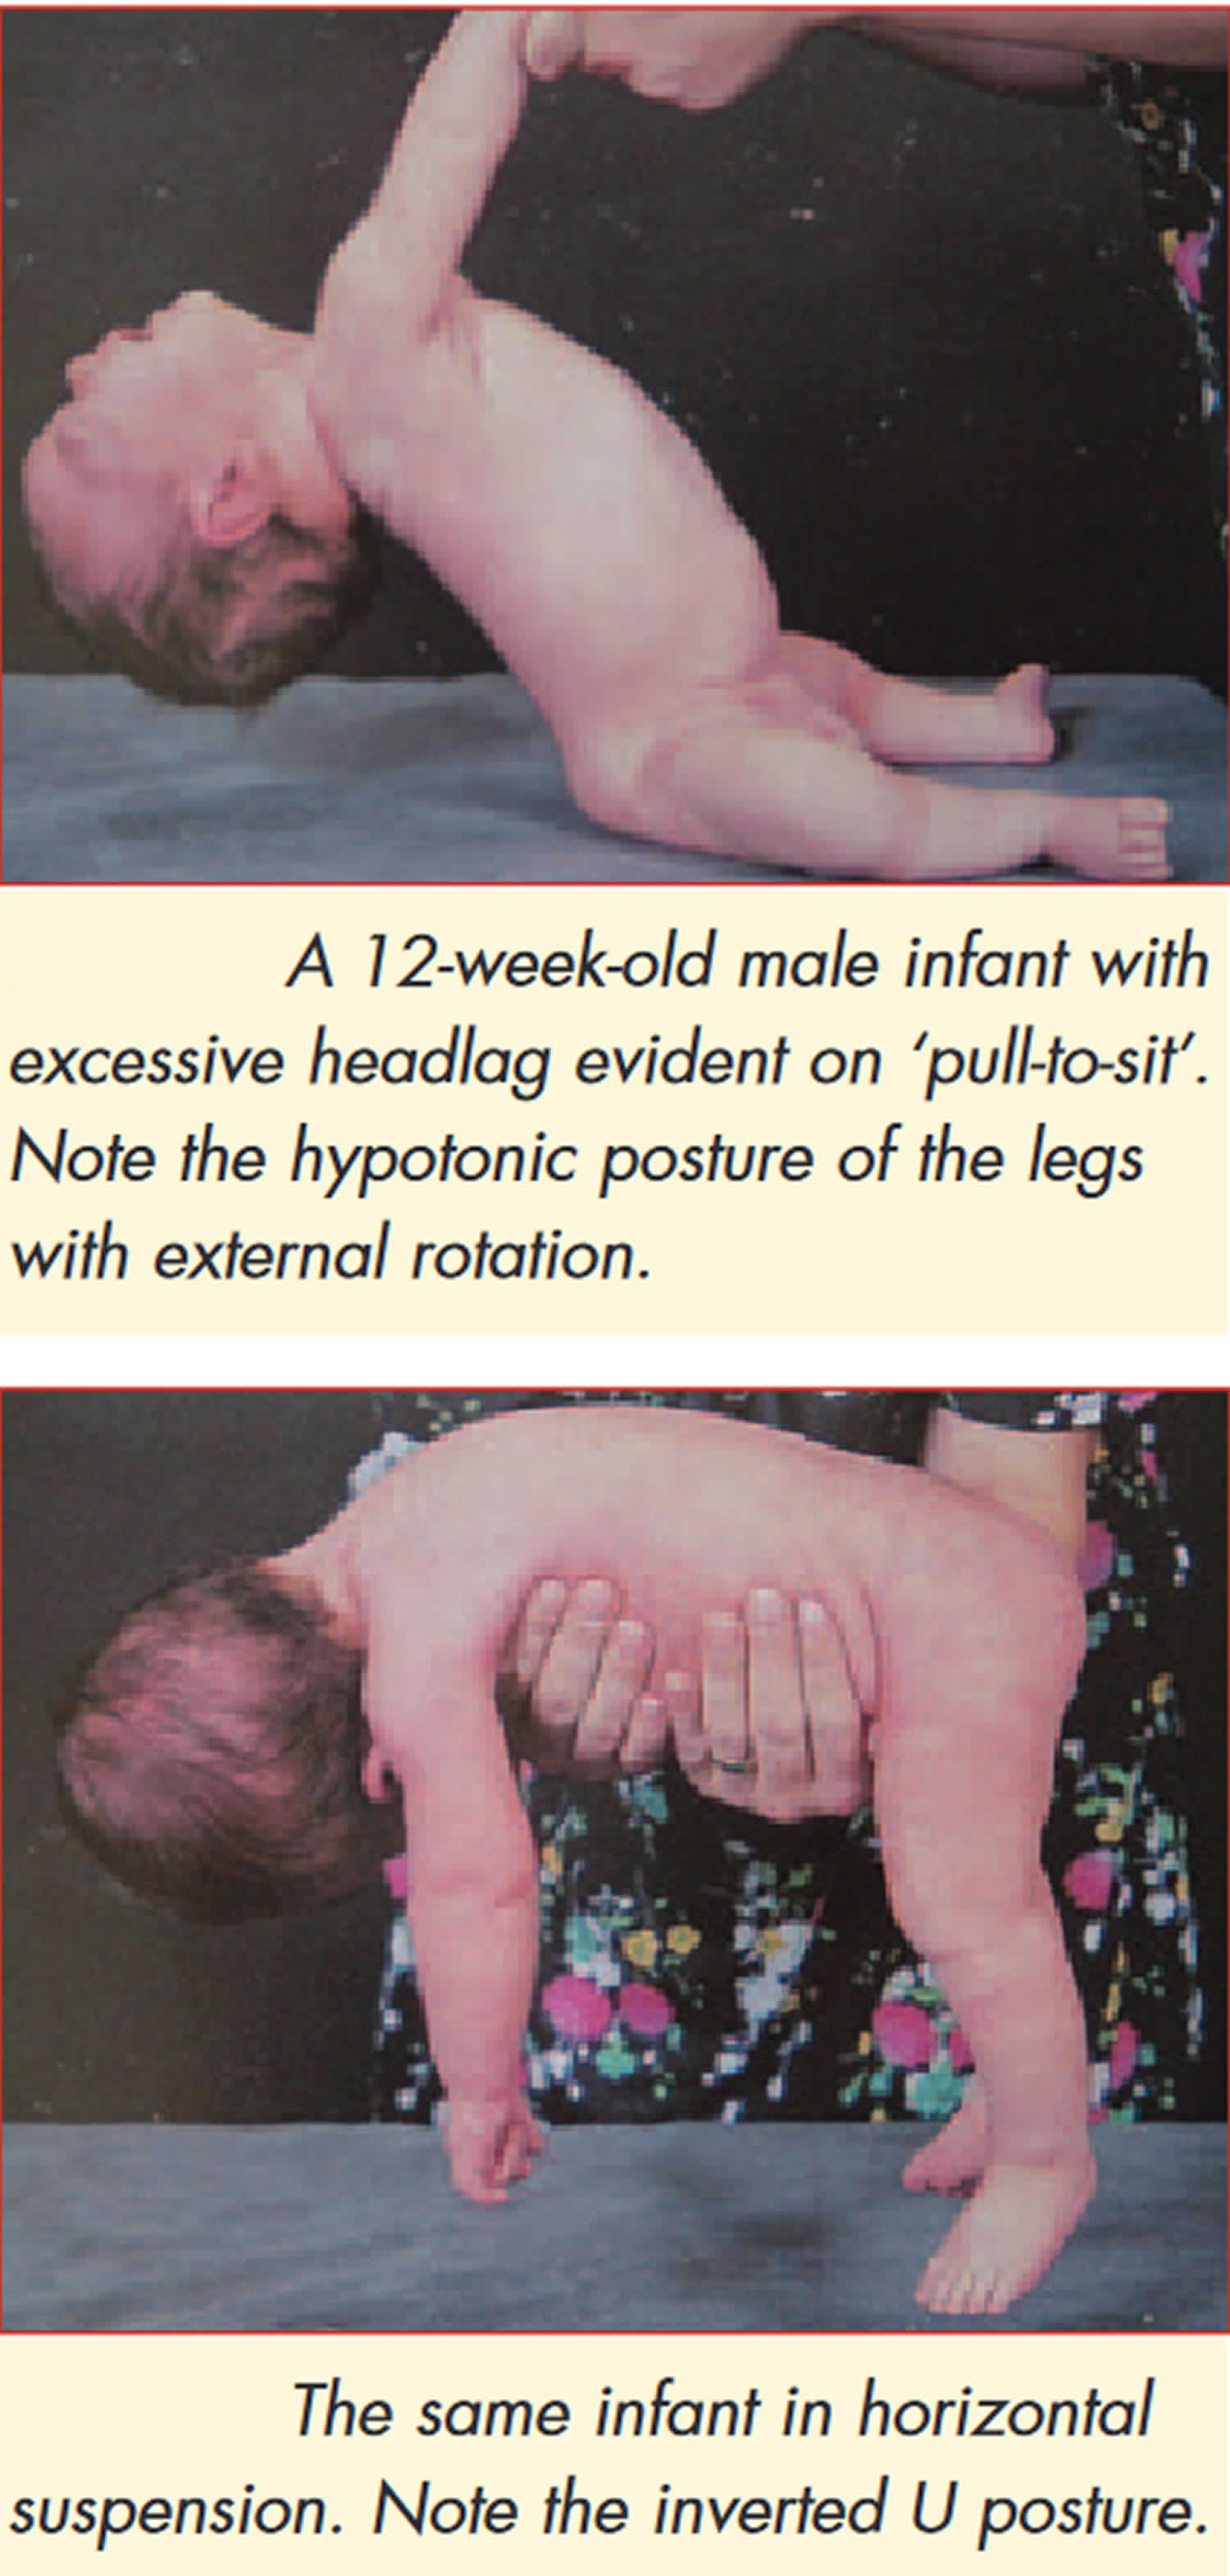 Floppy infant syndrome